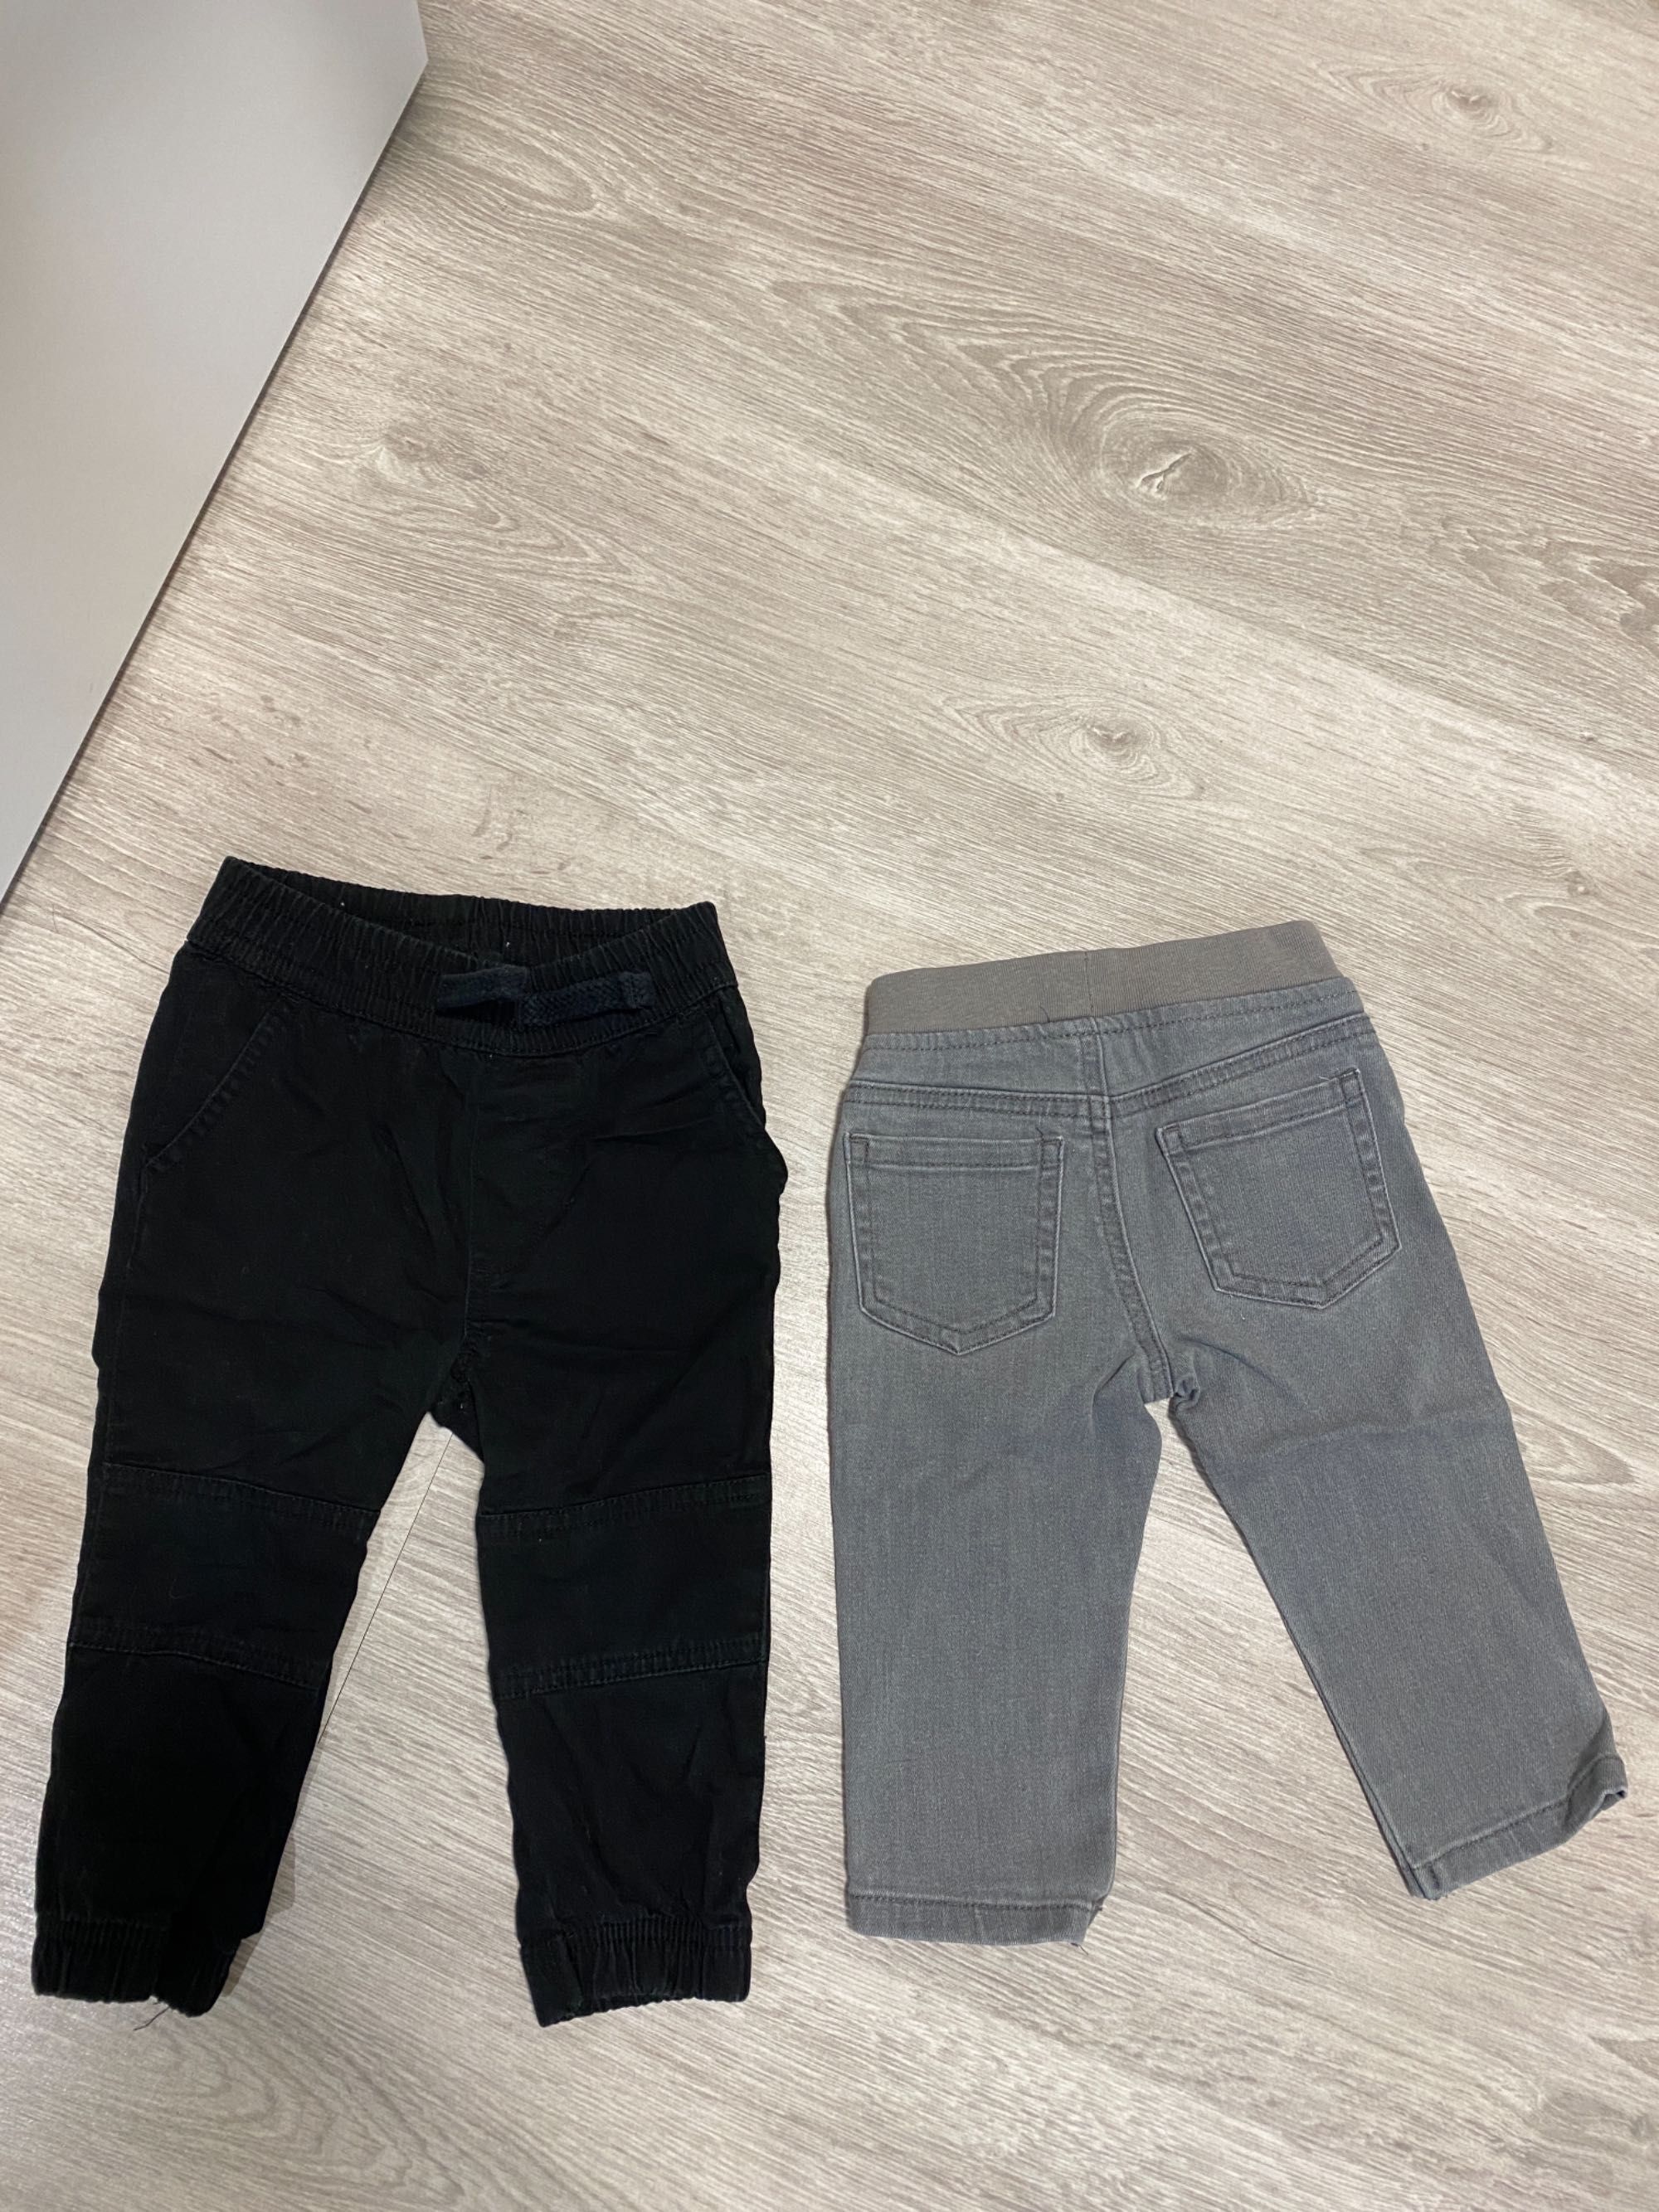 Штаны брюки джинсы детские 6-12 м 12-18 м